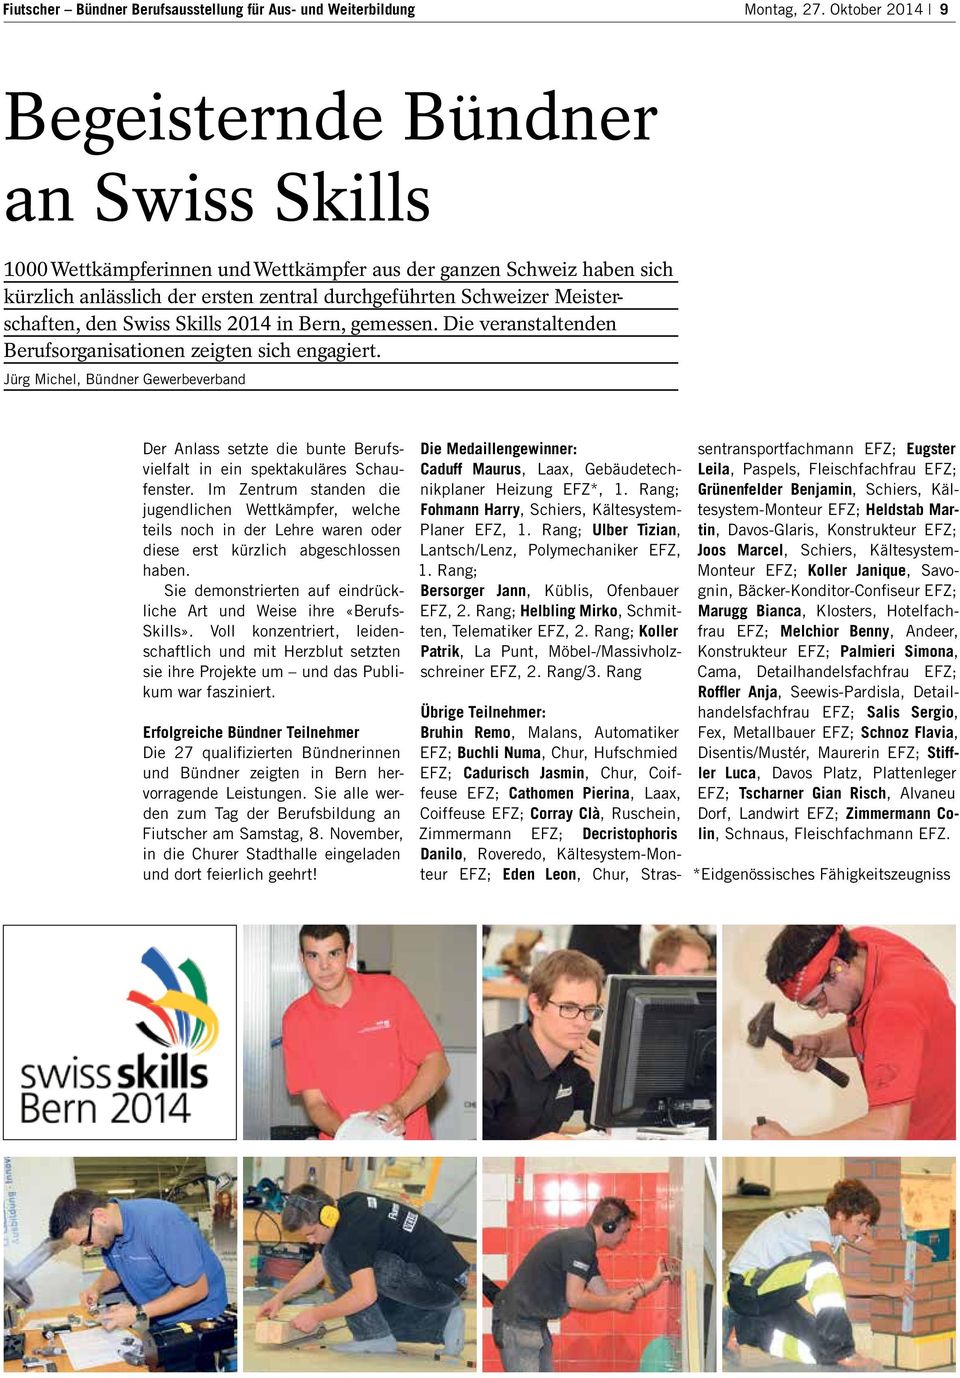 Meisterschaften, den Swiss Skills 2014 in Bern, gemessen. Die veranstaltenden Berufsorganisationen zeigten sich engagiert.